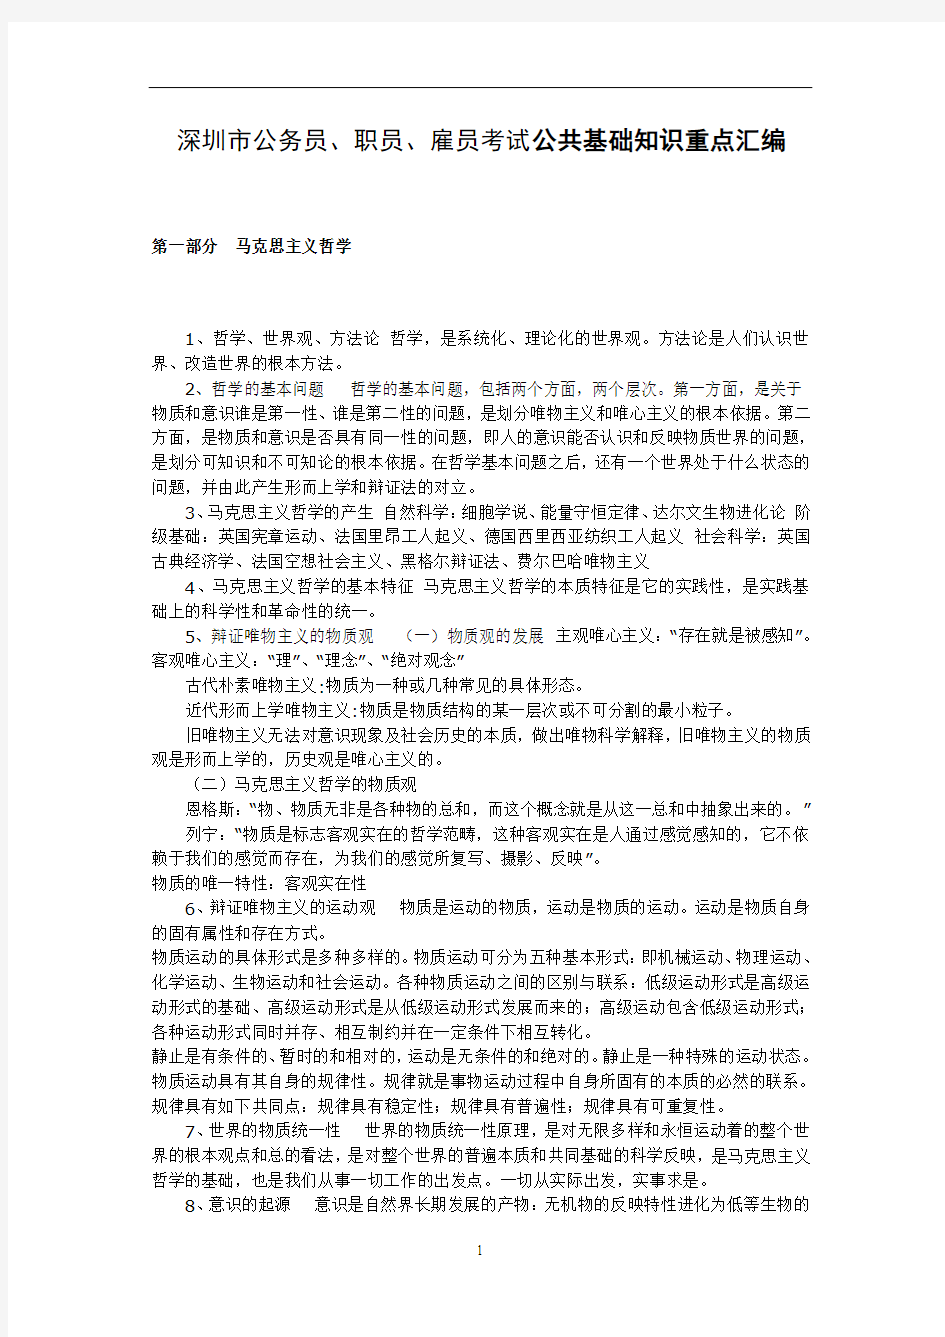 2011年最新深圳市公务员、职员、雇员考试公共基础知识重点汇编